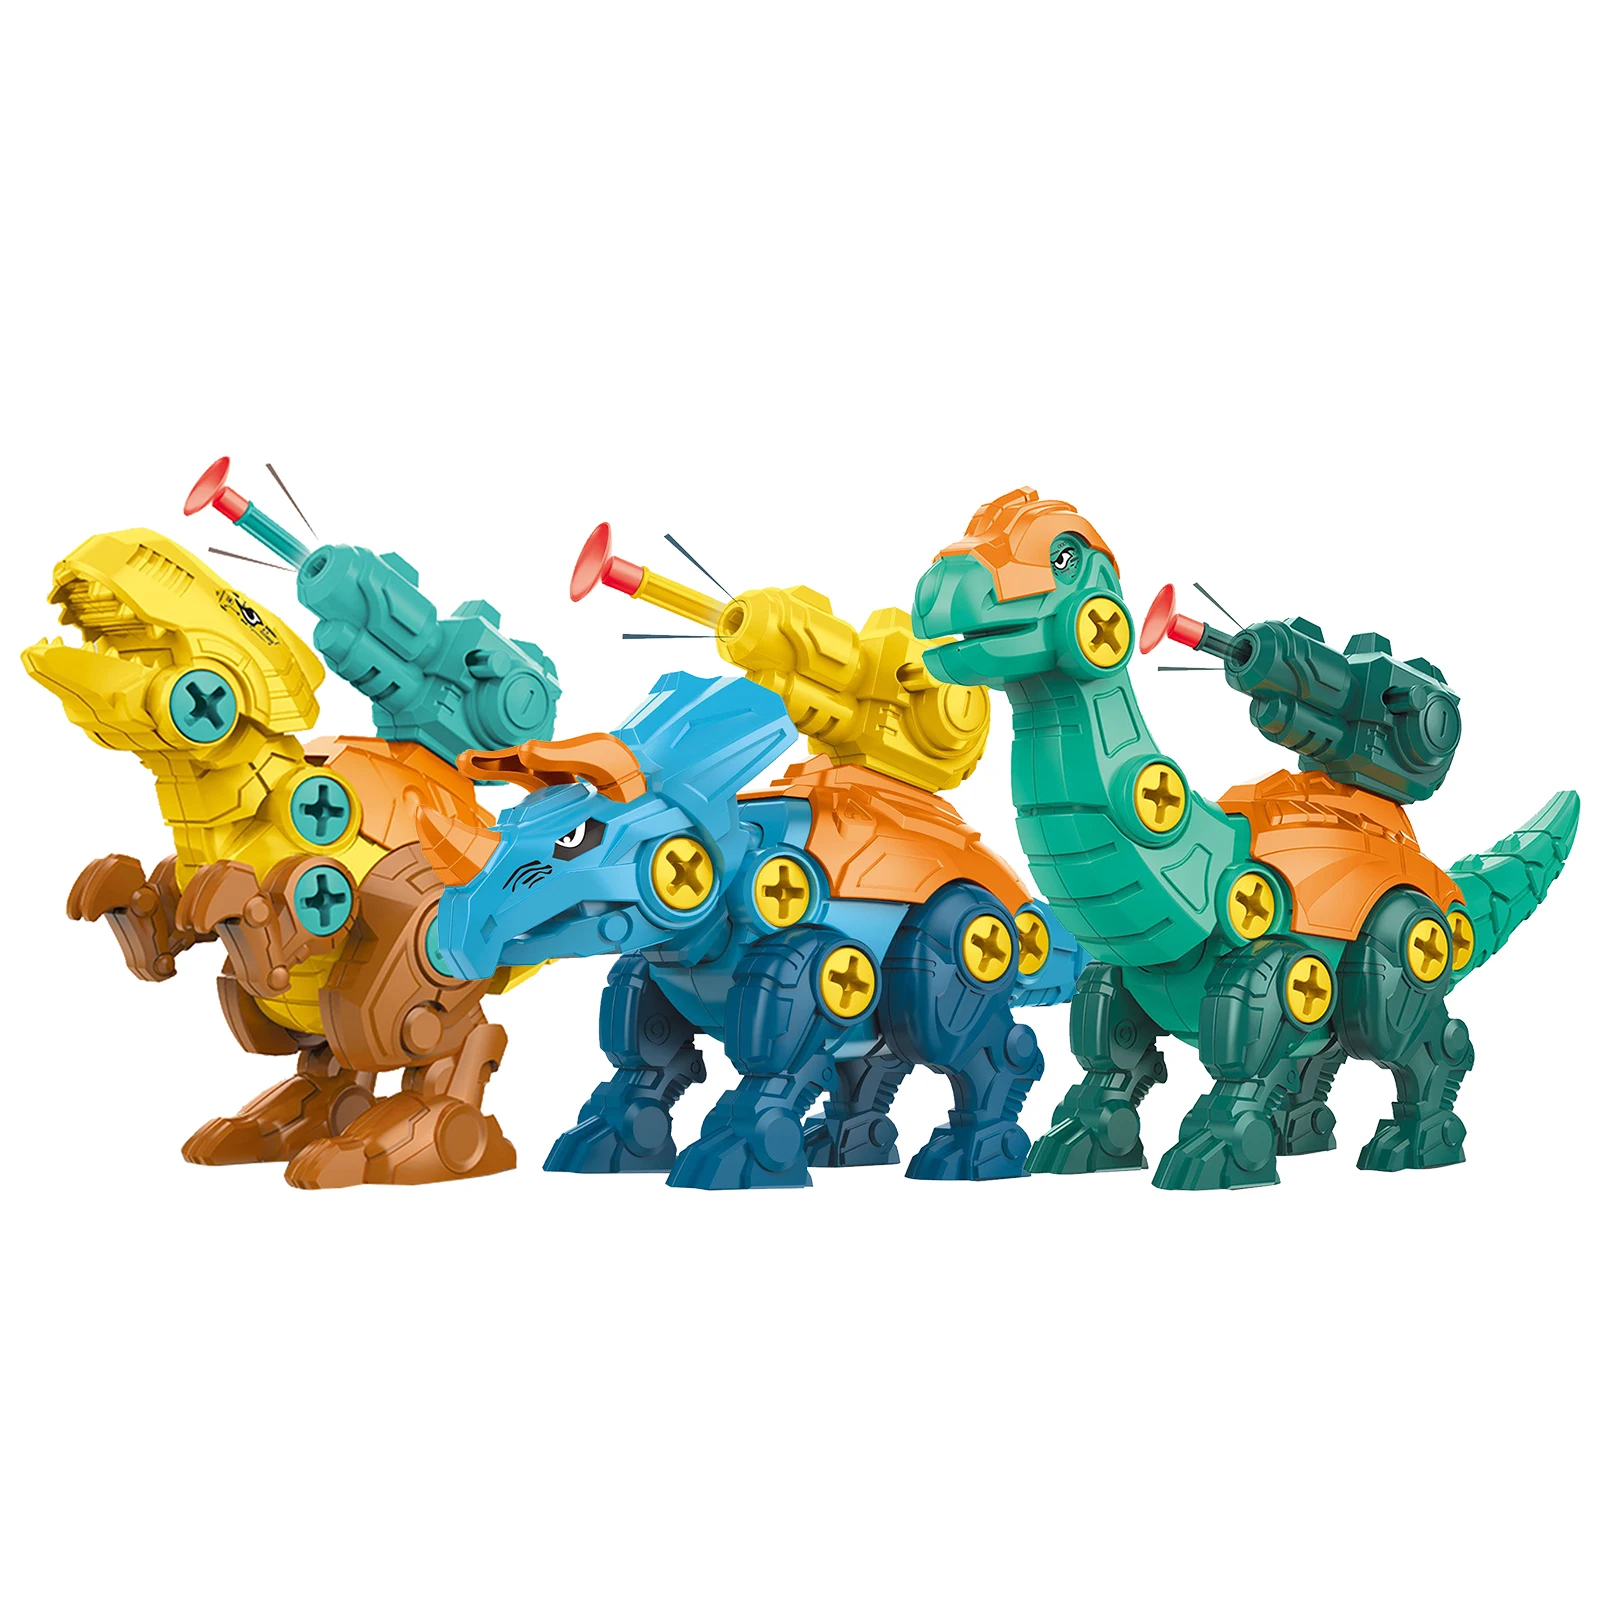 

Разборка своими руками, сборная модель динозавра с винтовой гайкой, обучающая игрушка для детей, подарок для детей